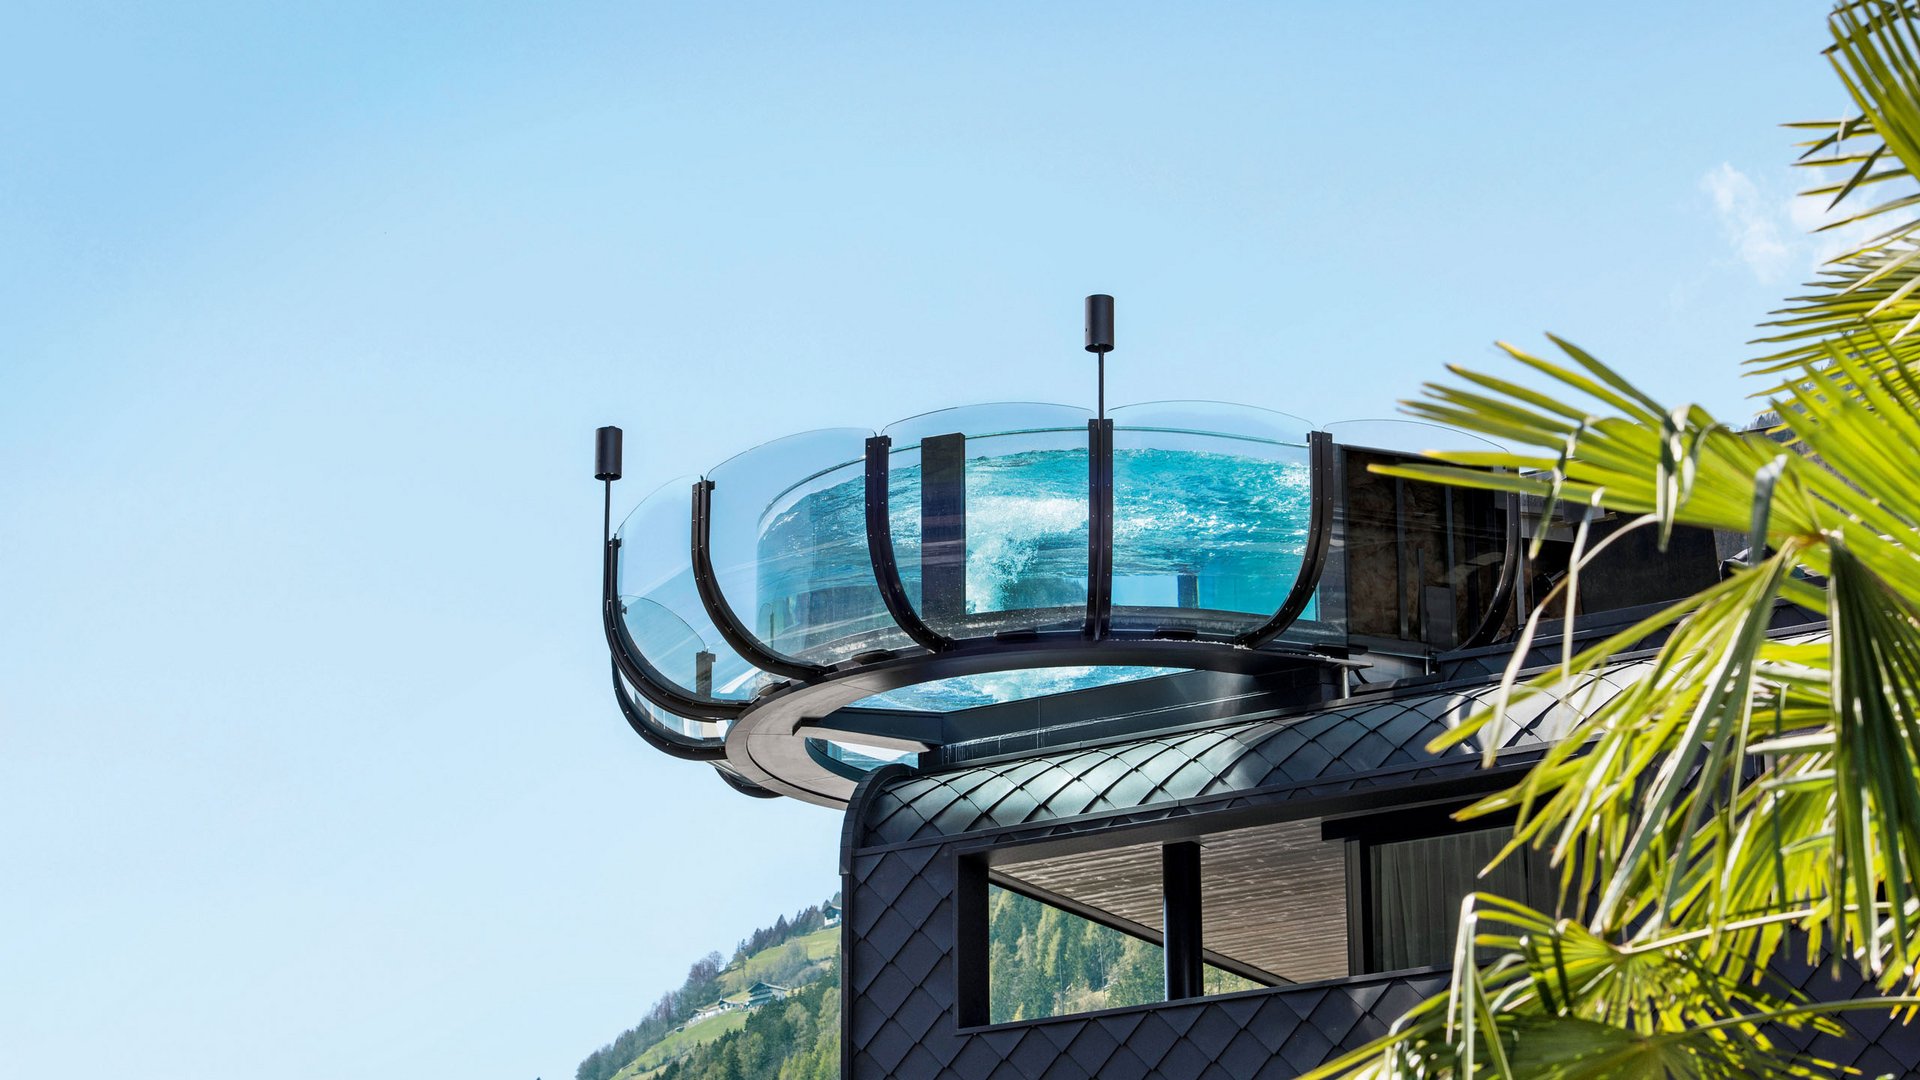 Ein Luxusurlaub in Südtirol, der das Herz erfreut